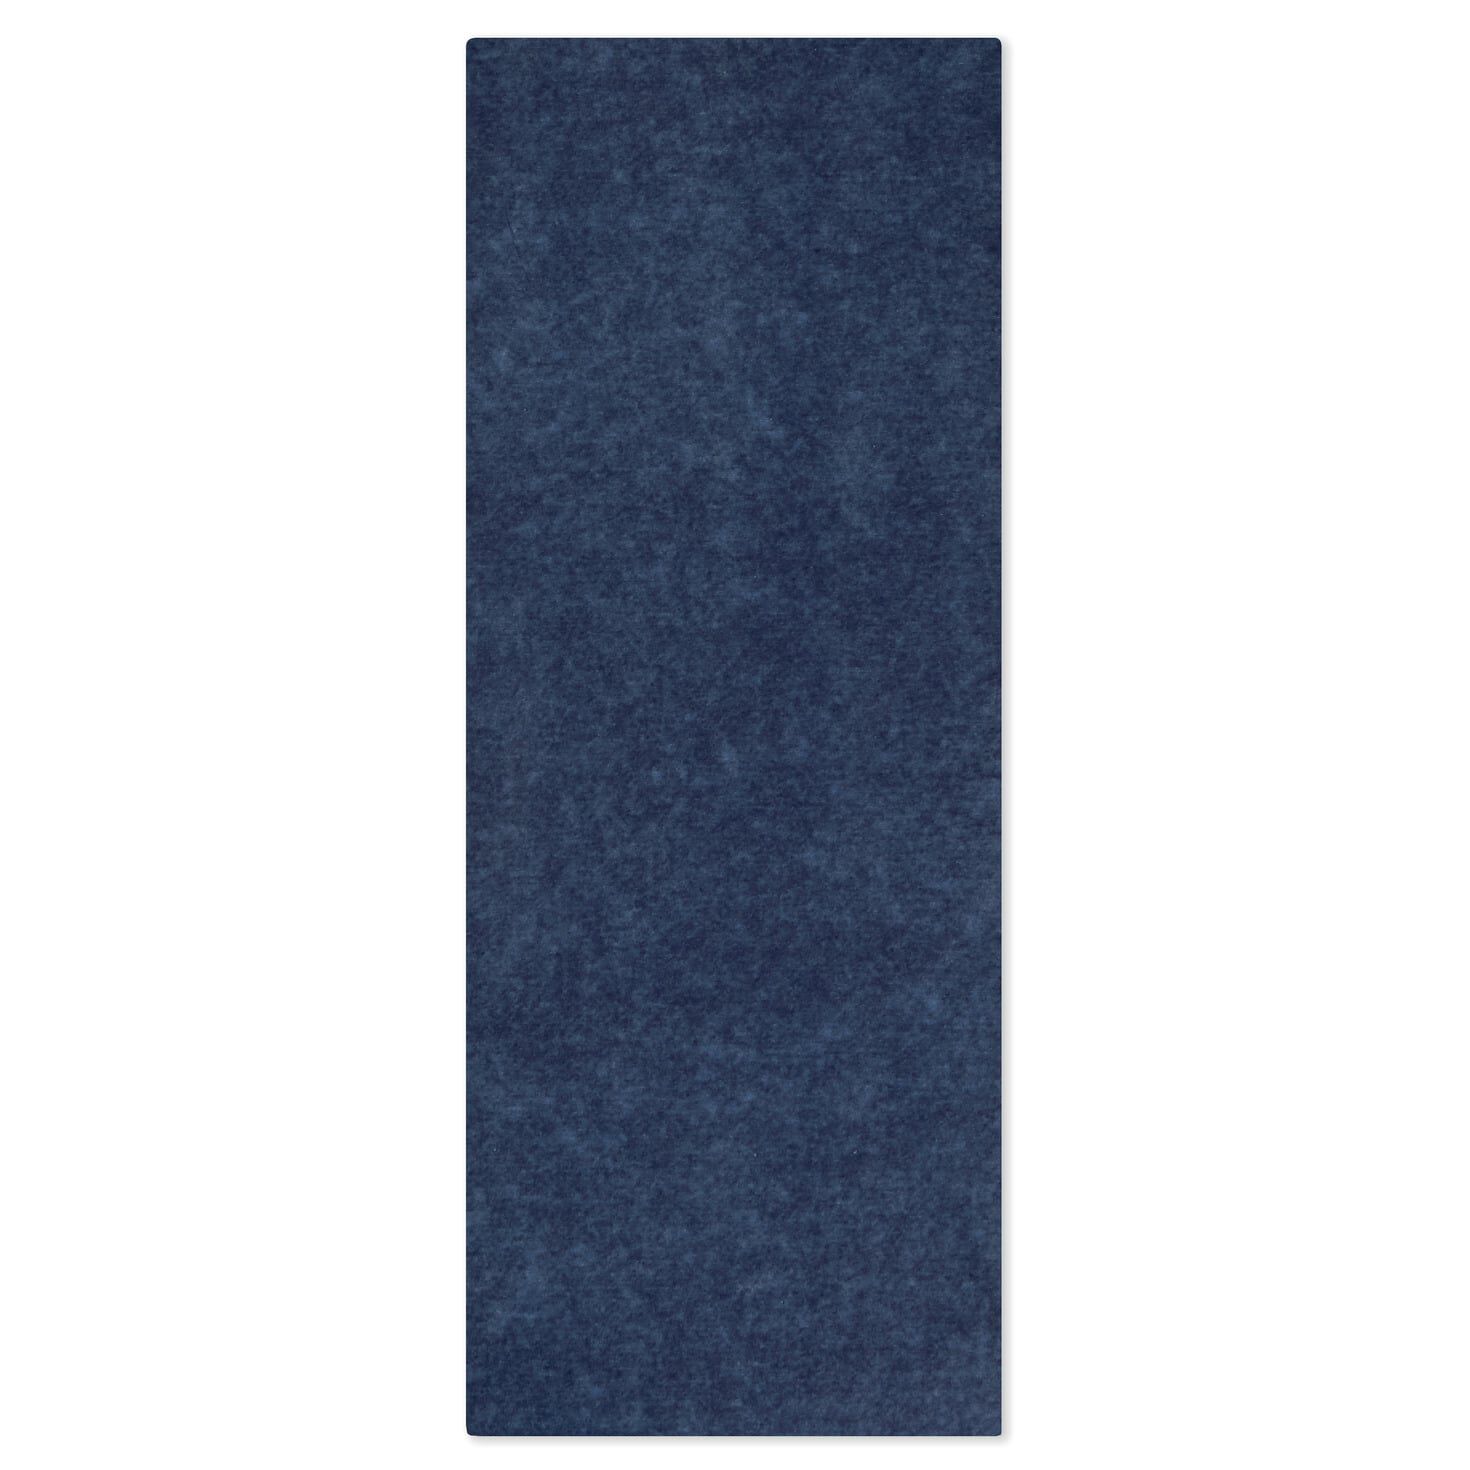 Navy Blue Tissue Paper 10-20 Sheets 20 X 30 Matte Premium Midnight